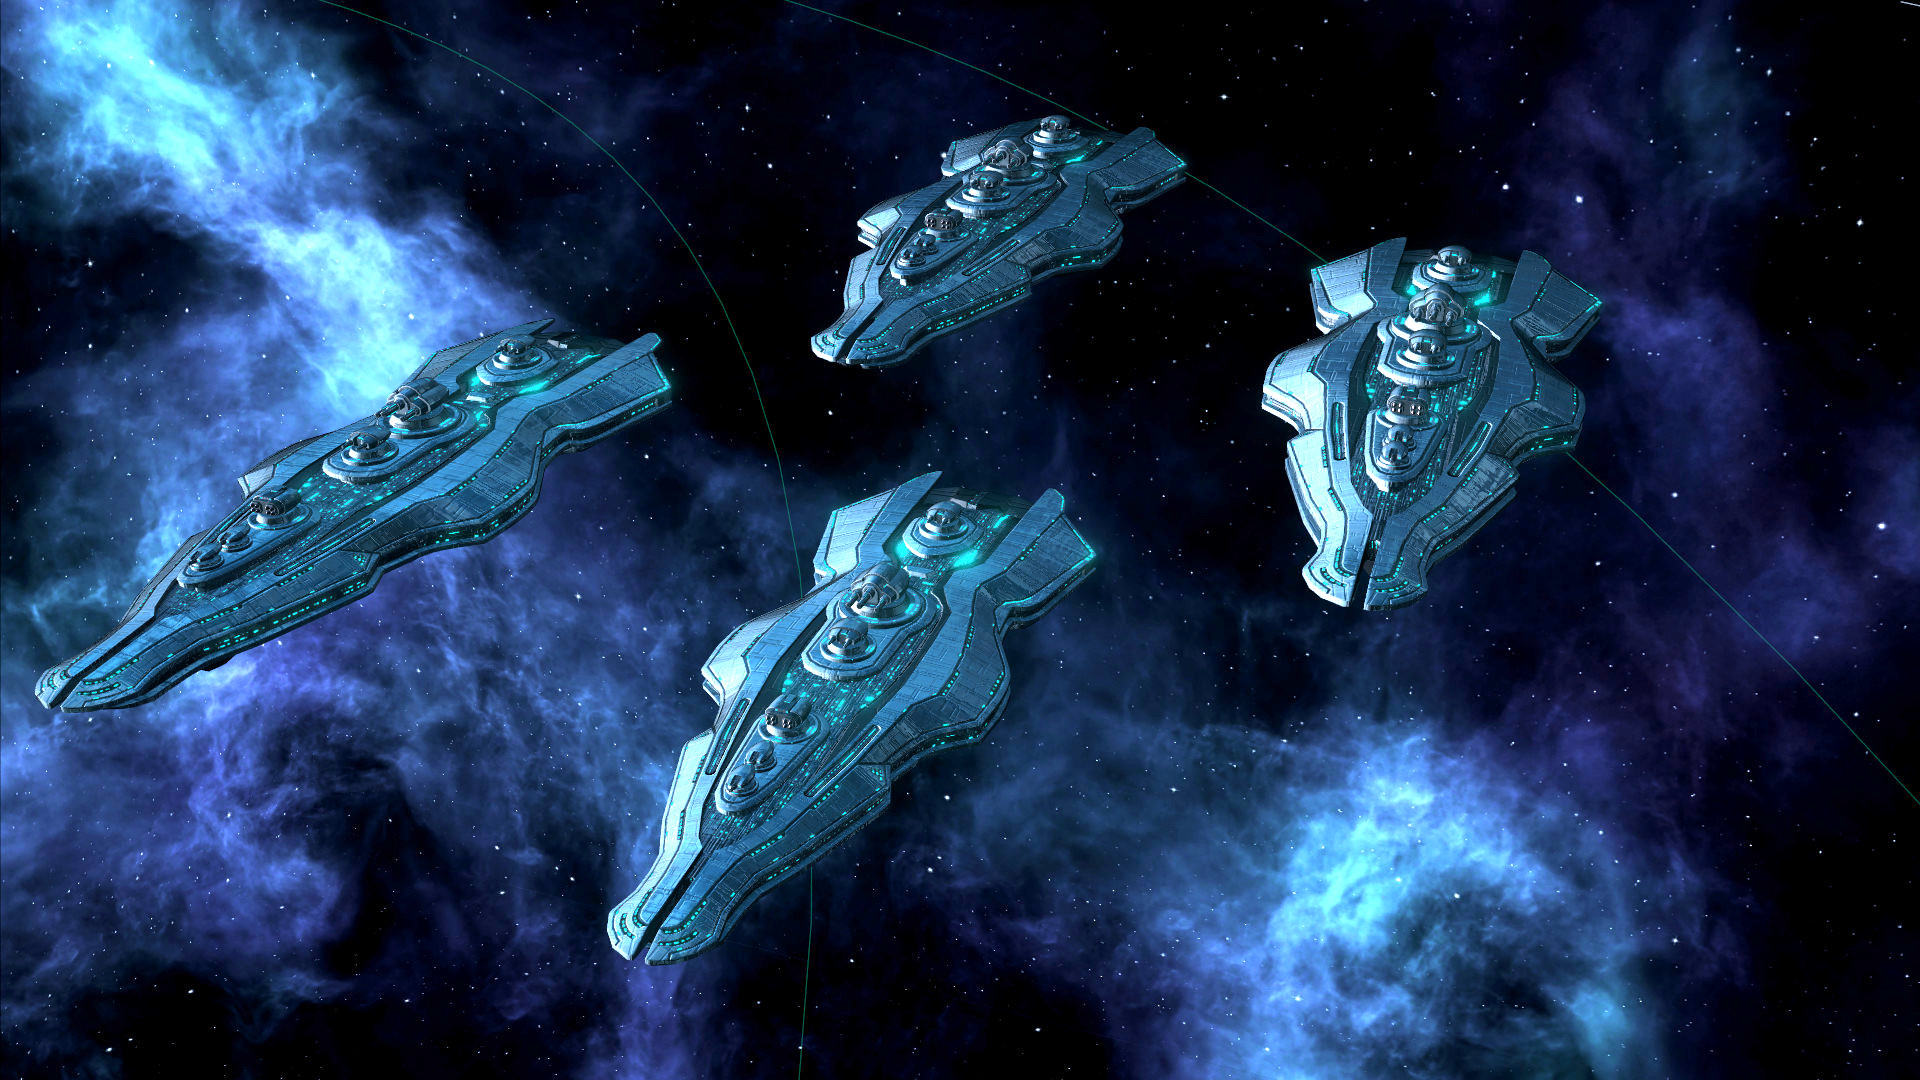 La nouvelle mise à jour de Stellaris vous permettra de jouer une race de soldats clones Star Wars décadents